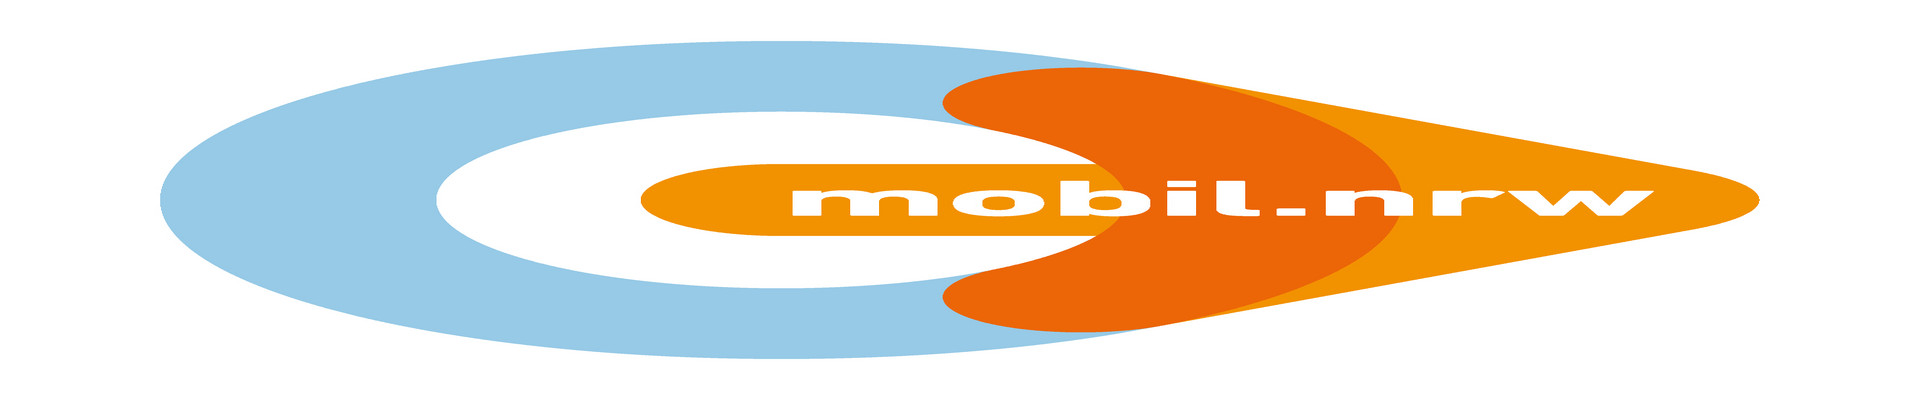 Das Logo von "Mobil NRW"